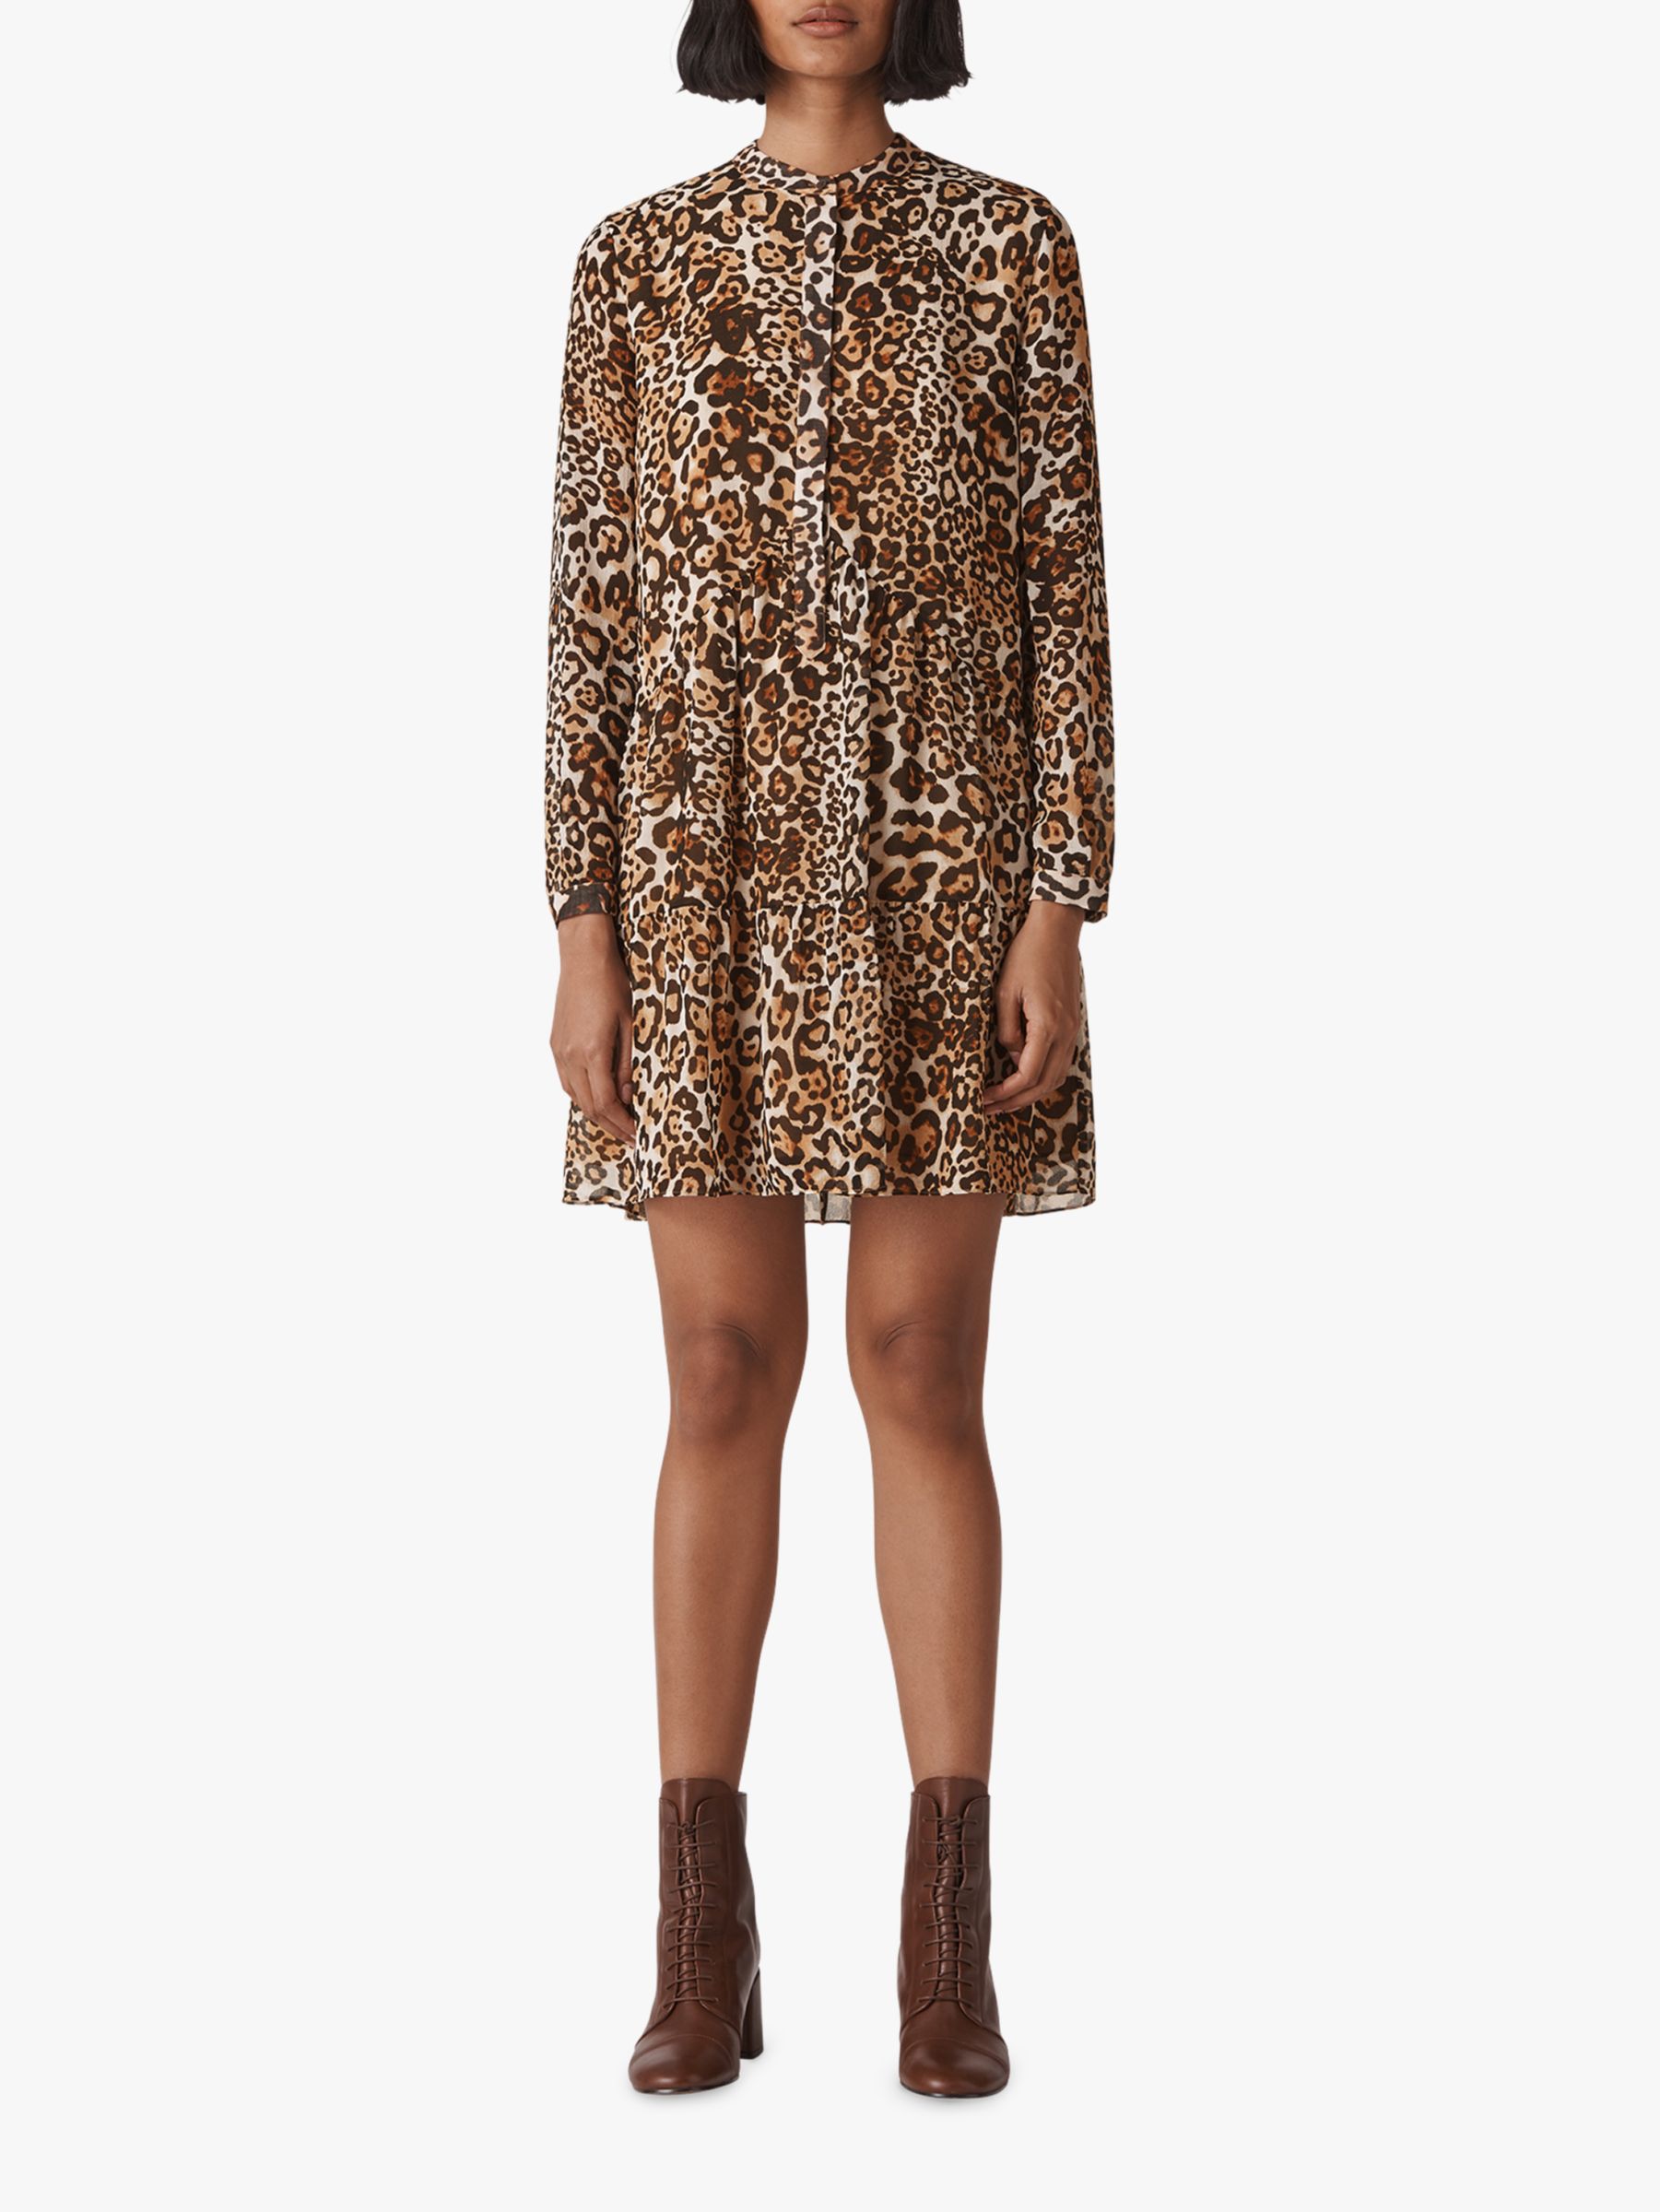 leopard print shirt dress